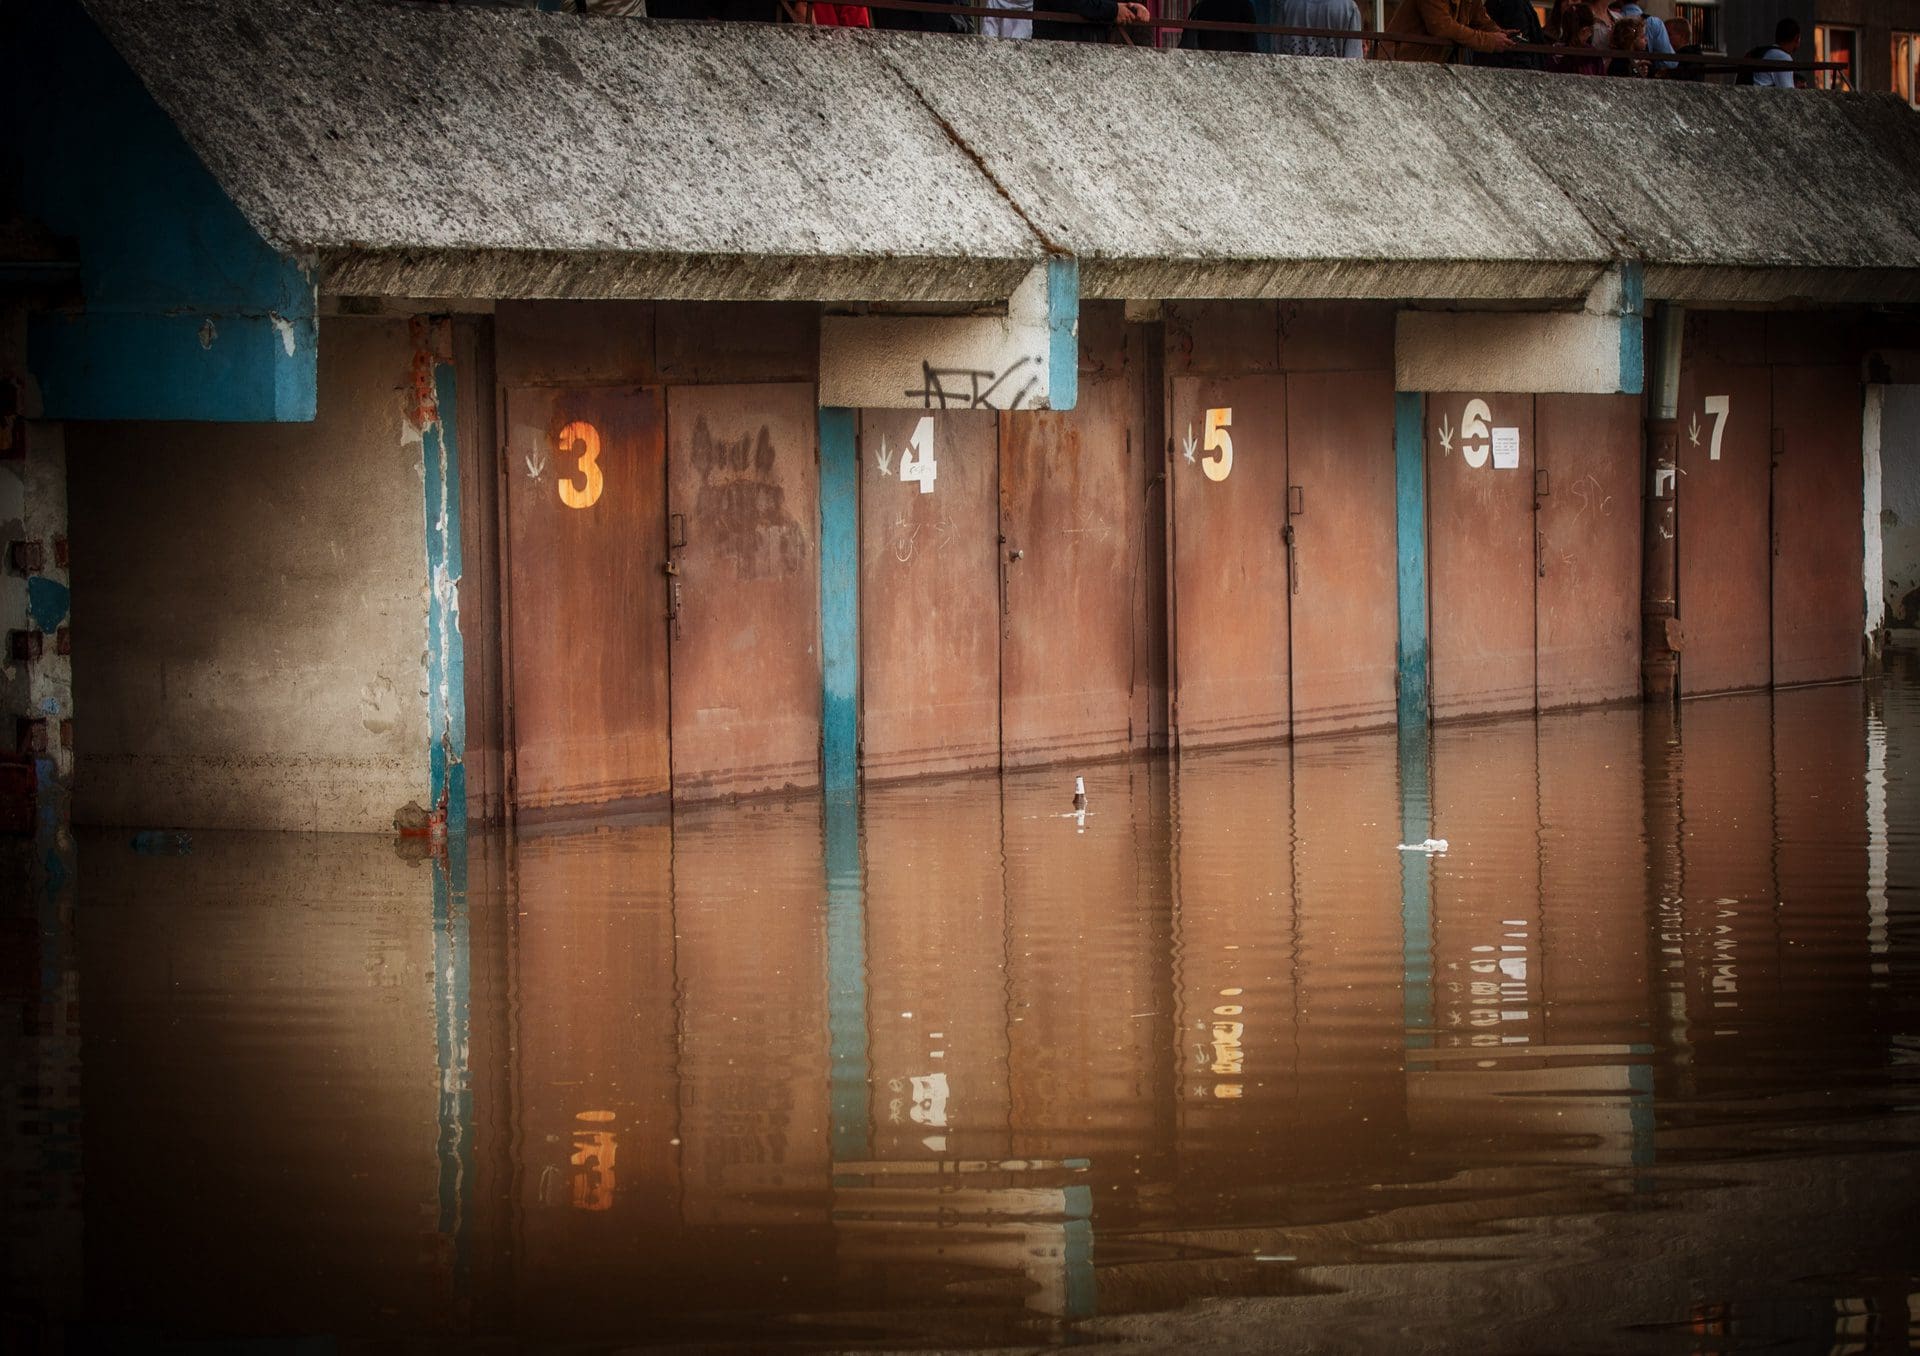 Wasserschaden in gemieteter Garage | Wer haftet wofür, und welche Versicherung zahlt was? (© satori / stock.adobe.com)